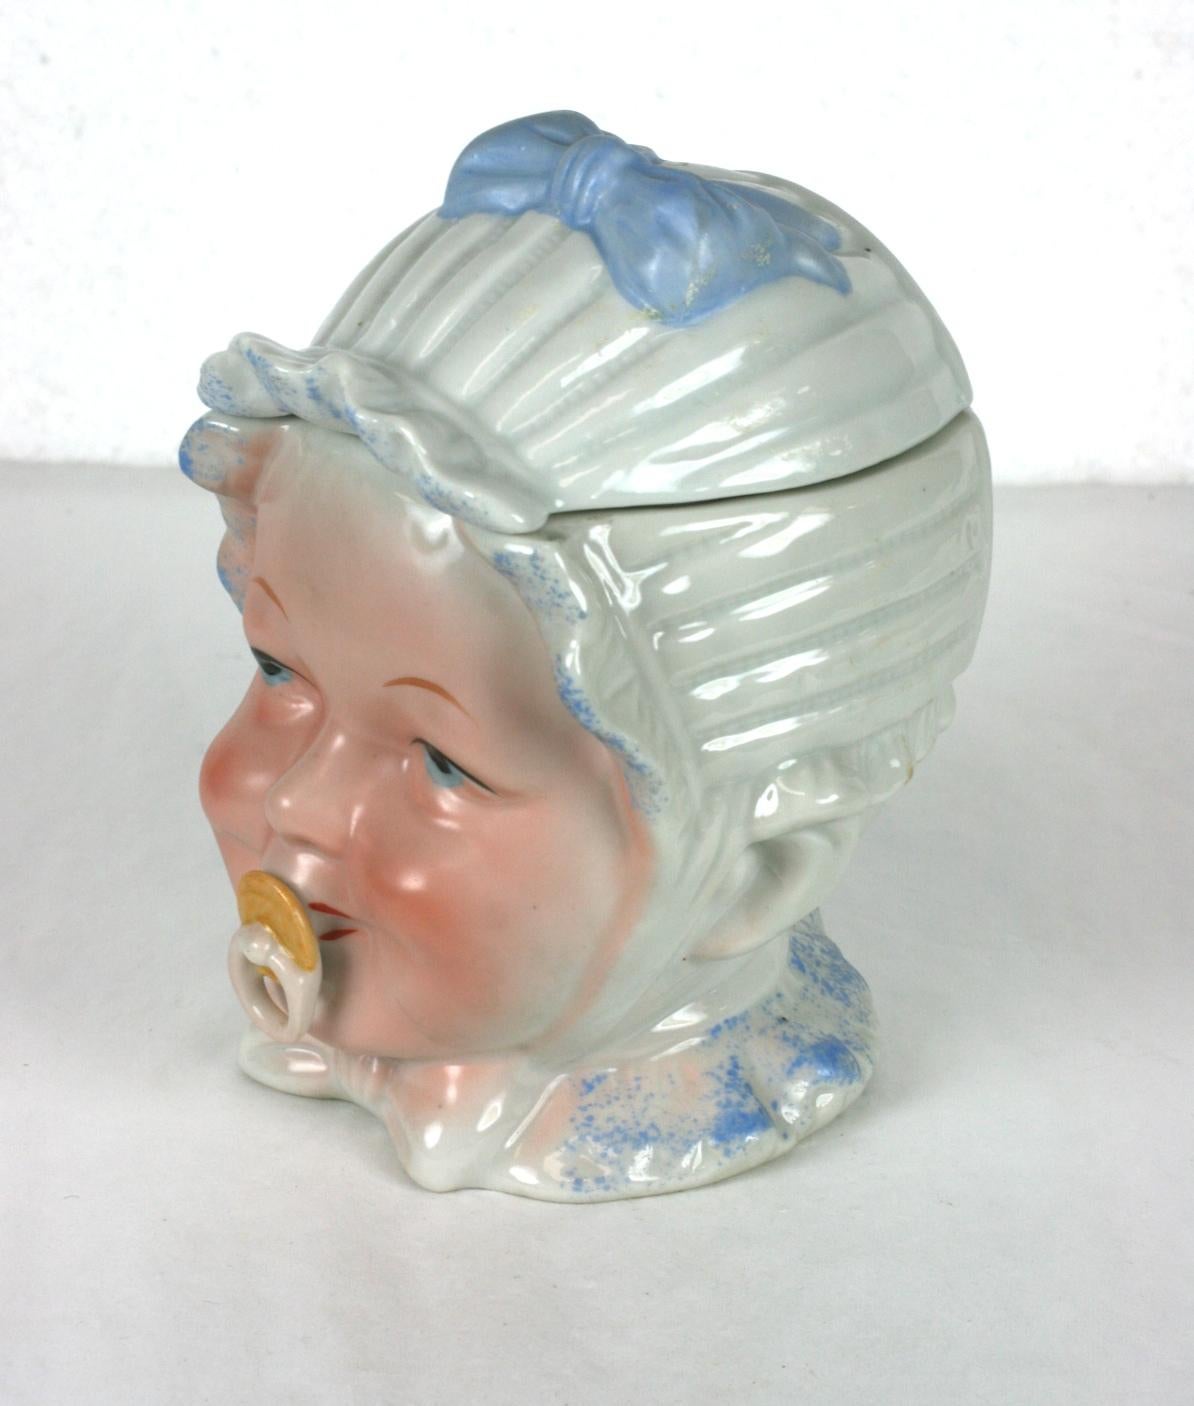 Viktorianisches Porzellan mit Babykopf, wahrscheinlich von Heubach, Deutschland, um 1880 bis 1900 hergestellt. Die antike Porzellankommode hat die Form eines glücklichen Babykopfes mit einem Schnuller im Mund und einem blau-weißen Häubchen mit